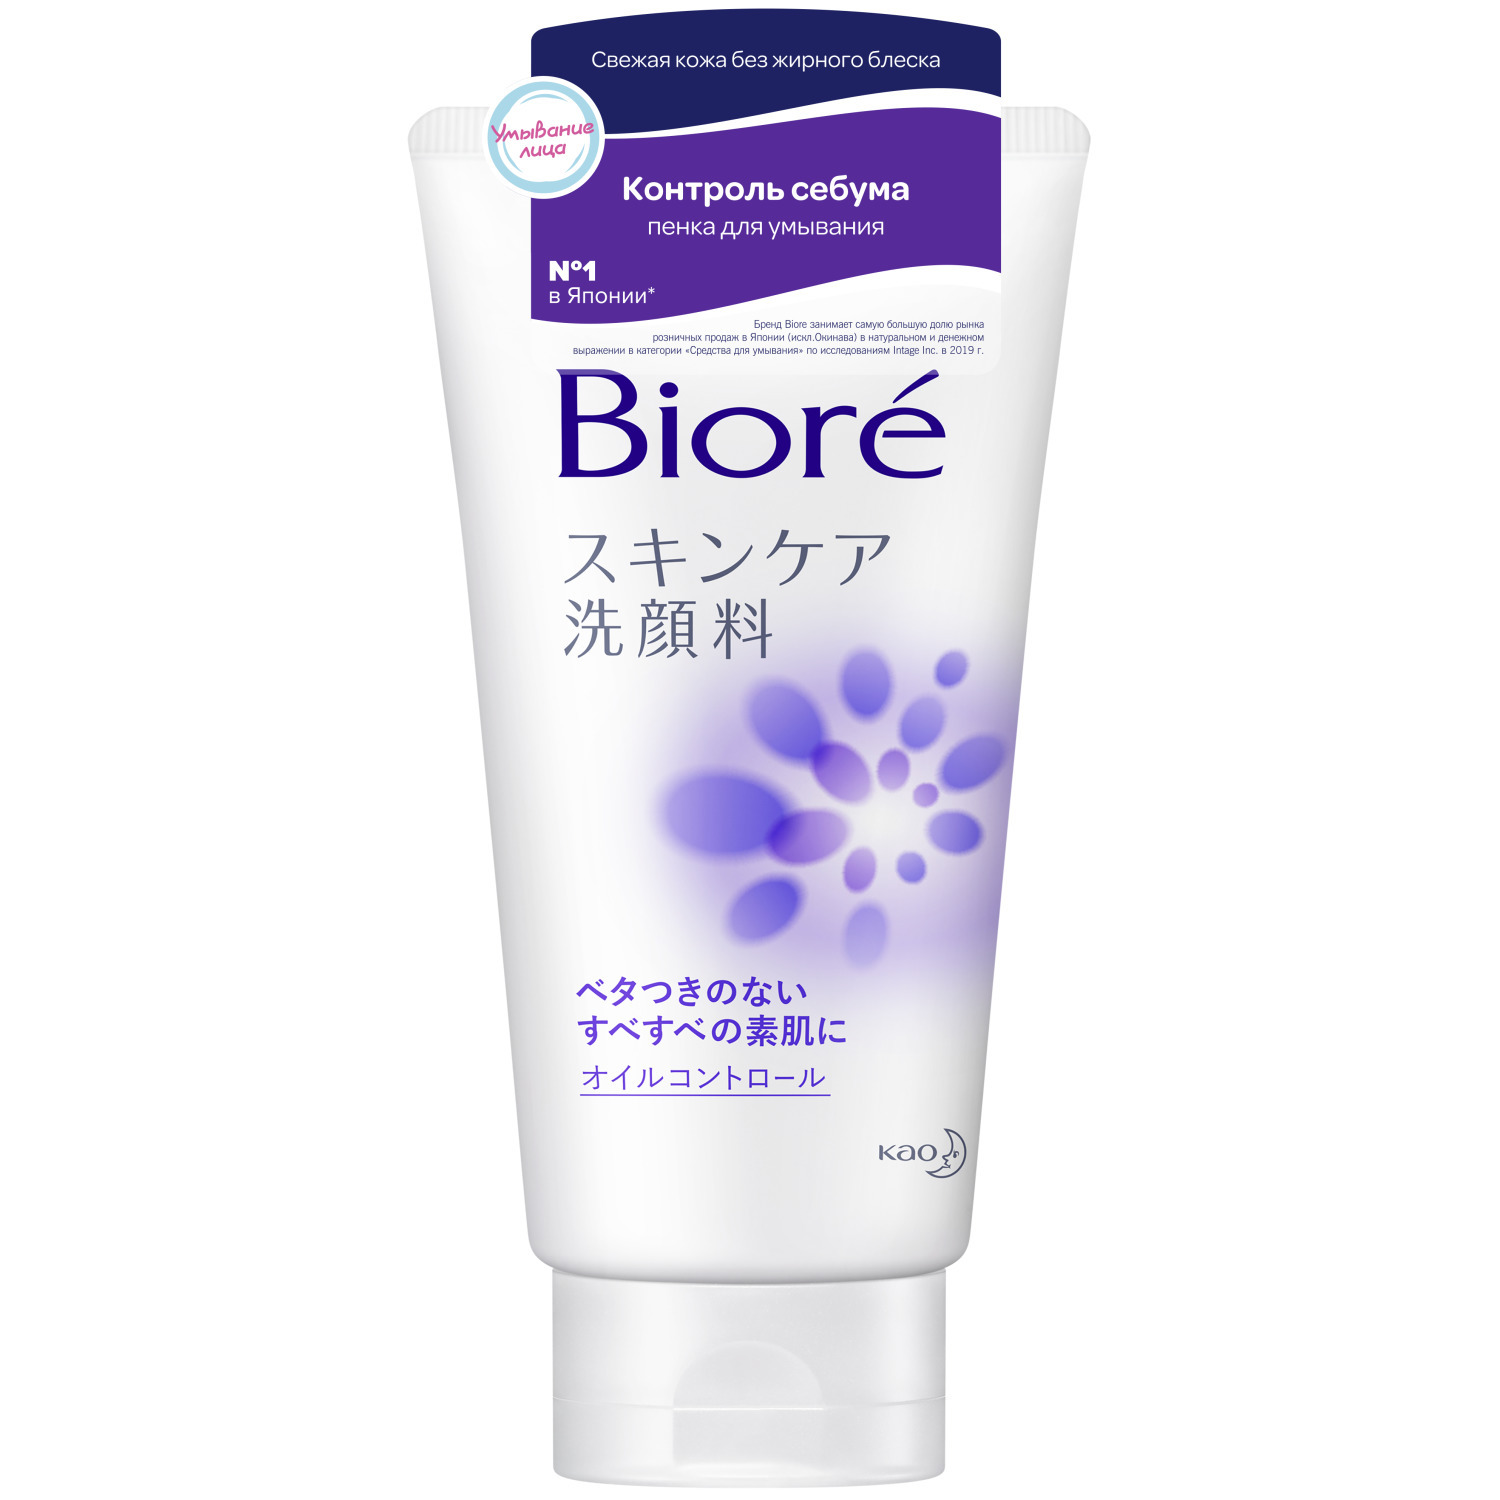 Купить Biore Пенка для умывания кожи Контроль себума 130 мл (Biore, Средства для очищения и демакияжа), Япония